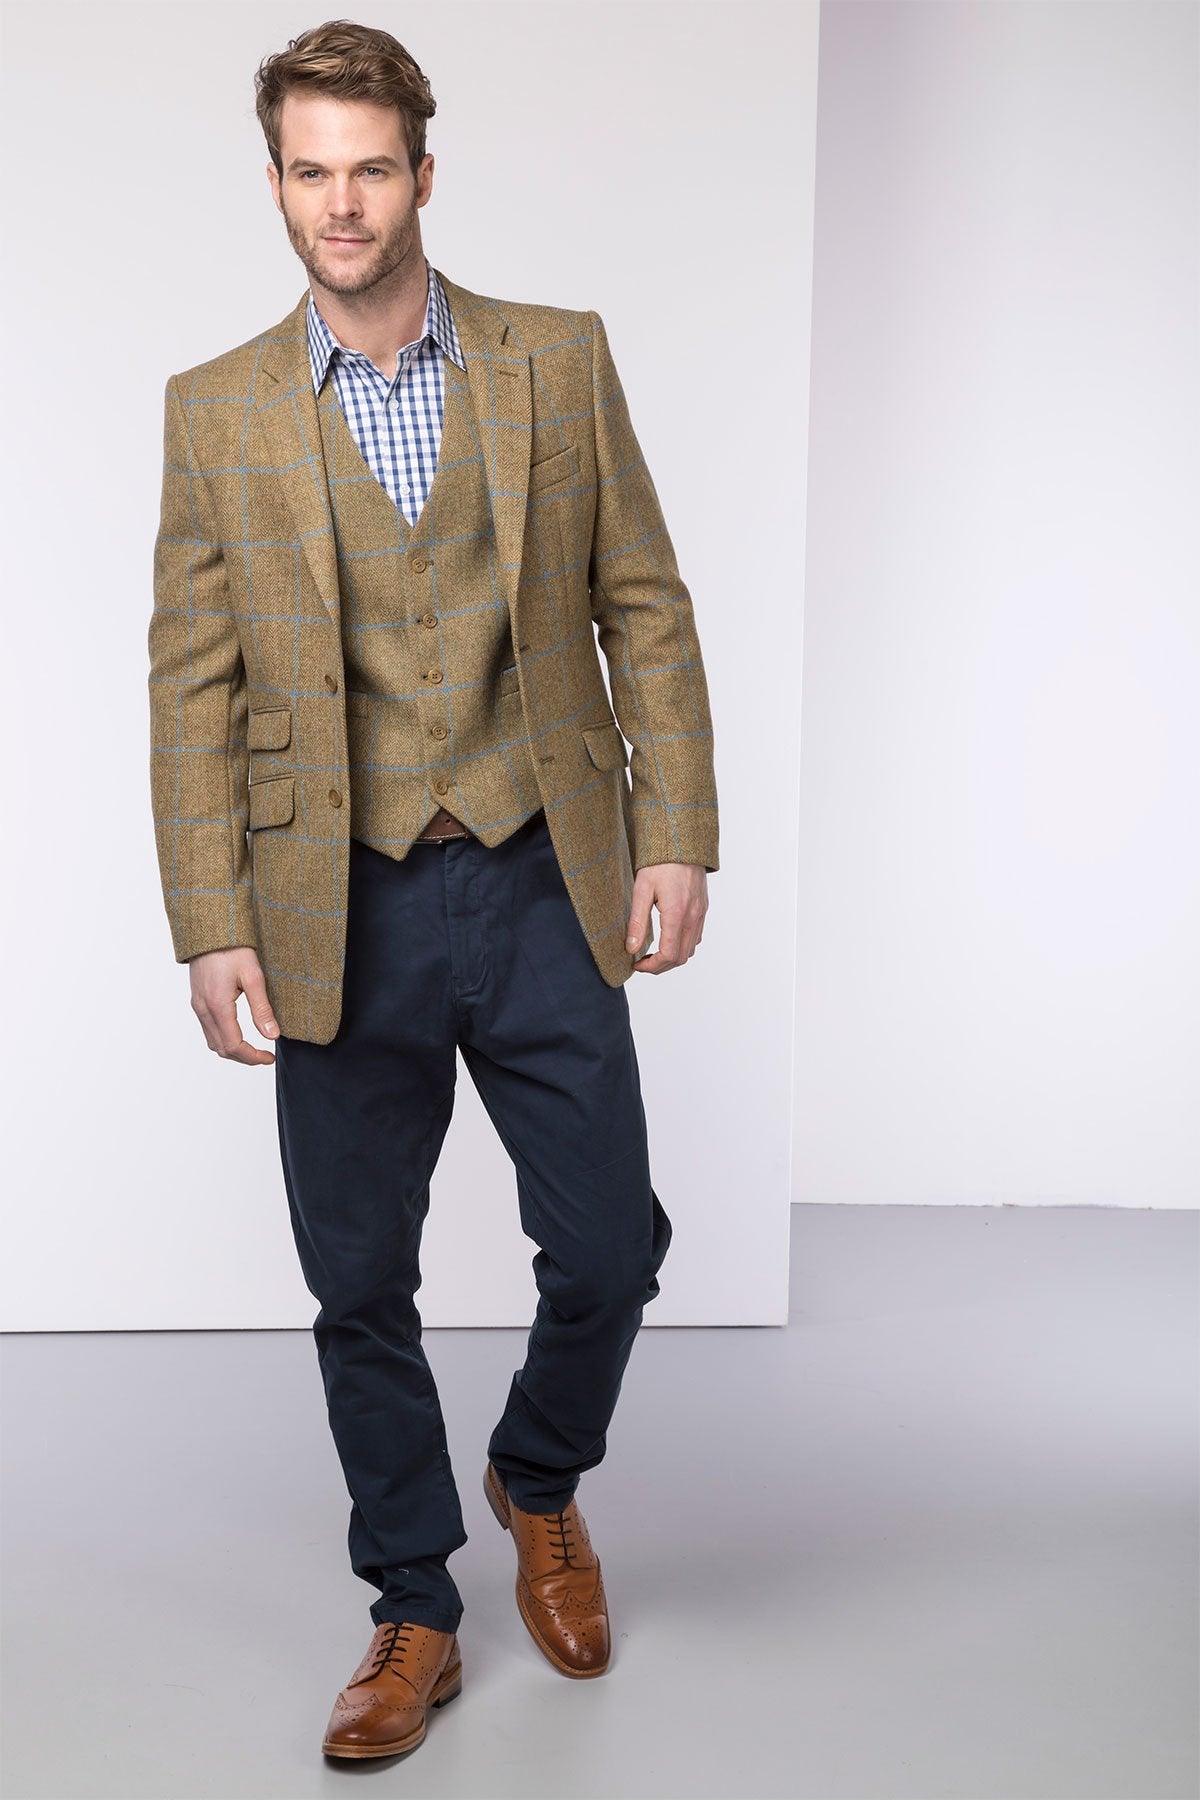 Mens Wool Tweed Jacket UK | Casual Tweed Blazer | Rydale